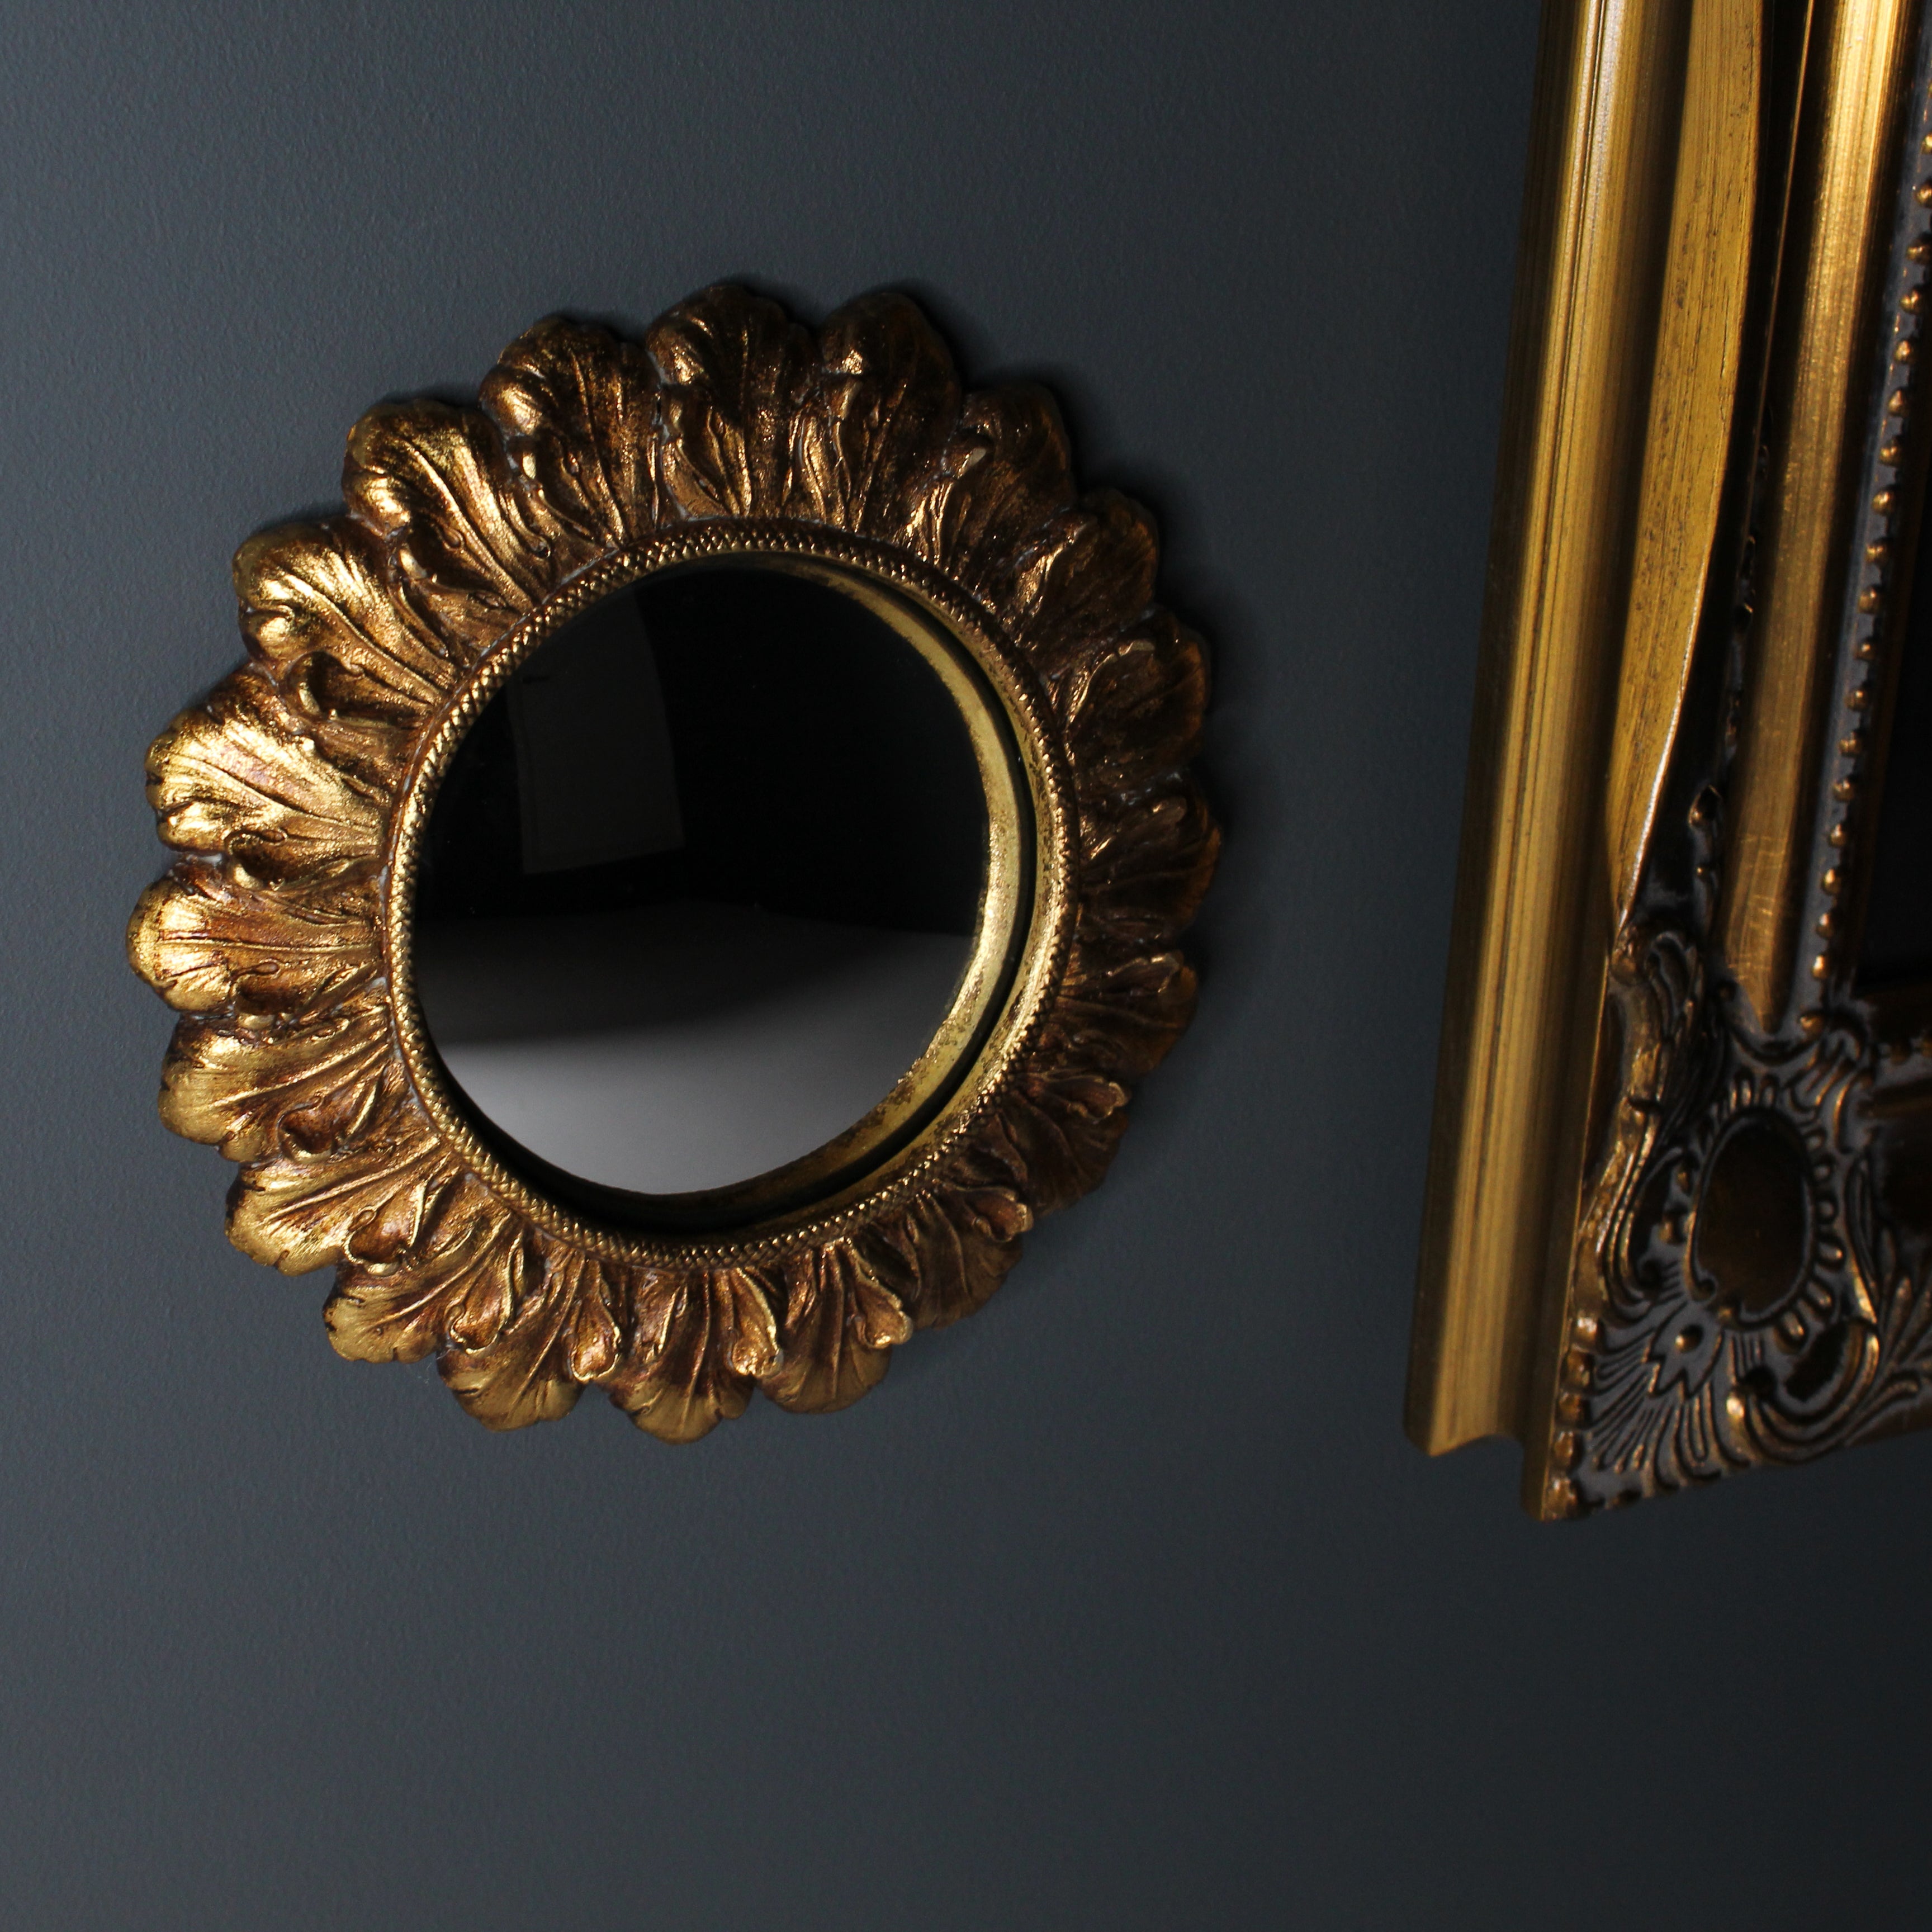 Cecilia Baroque Mirror - The Blackened Teeth